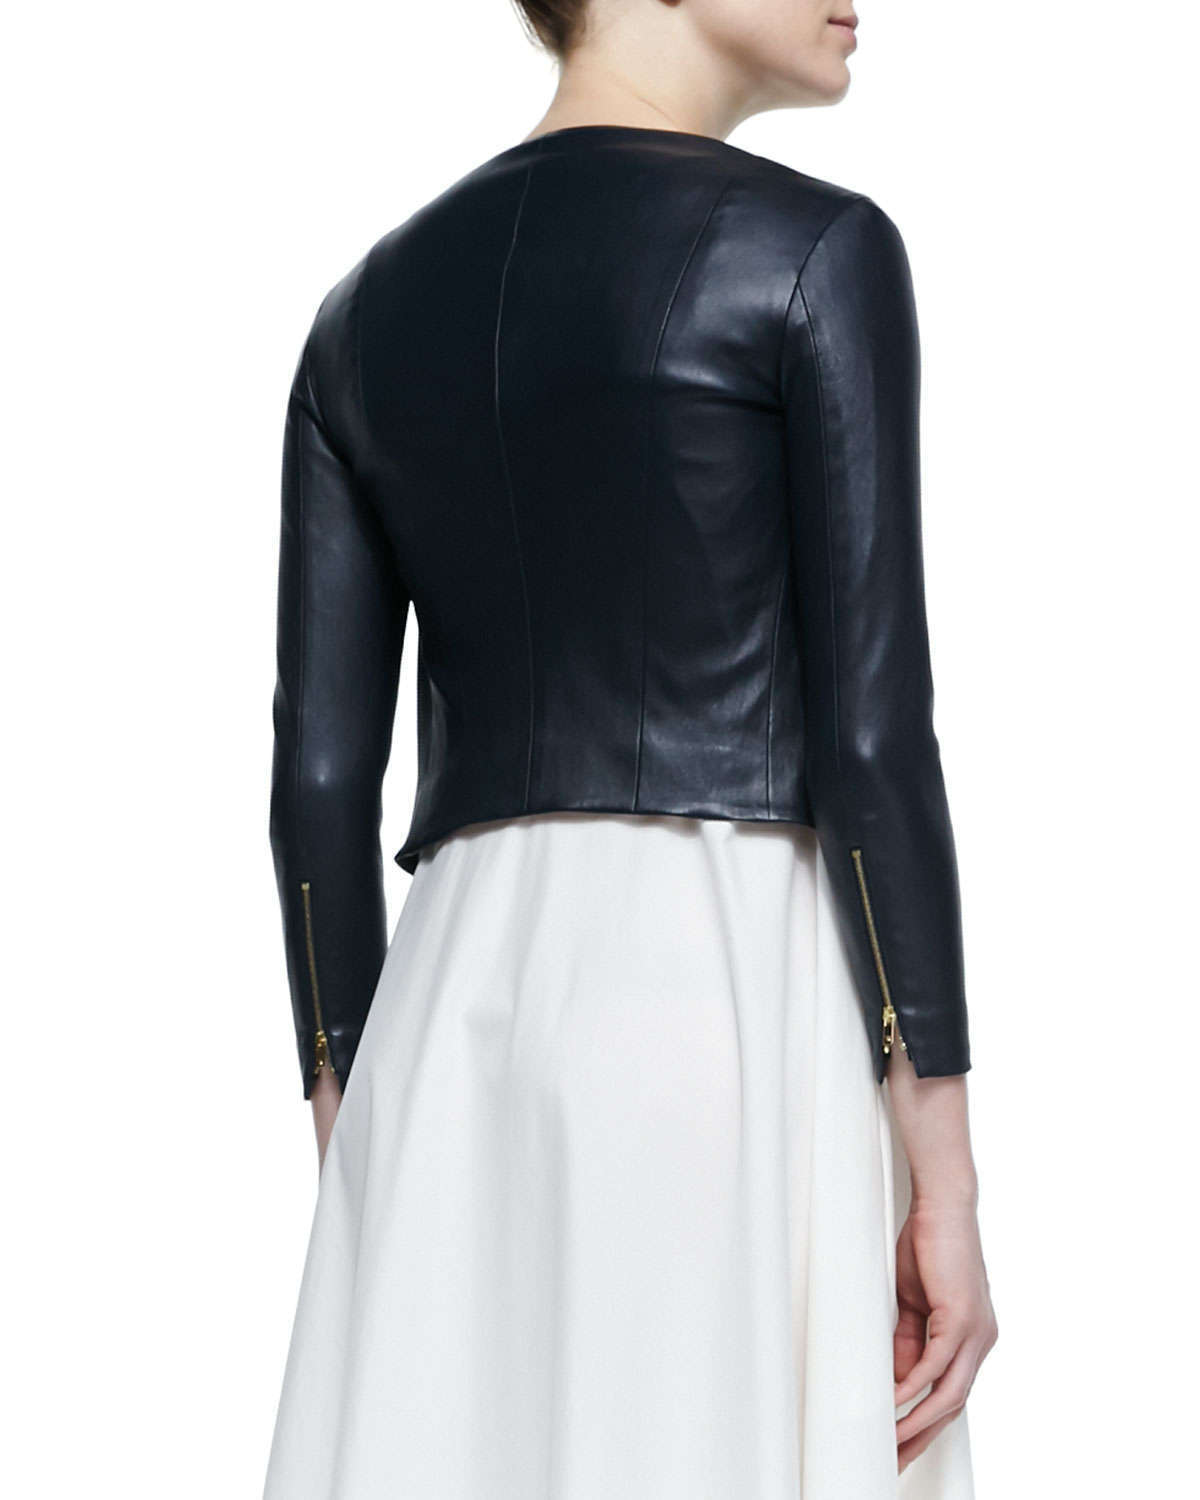 Women Cropped Jacket Open Shrug Bolero Evening Blouse Coat Lambskin Leather  5650 (US 4 / UK 8) Black : : Clothing, Shoes & Accessories